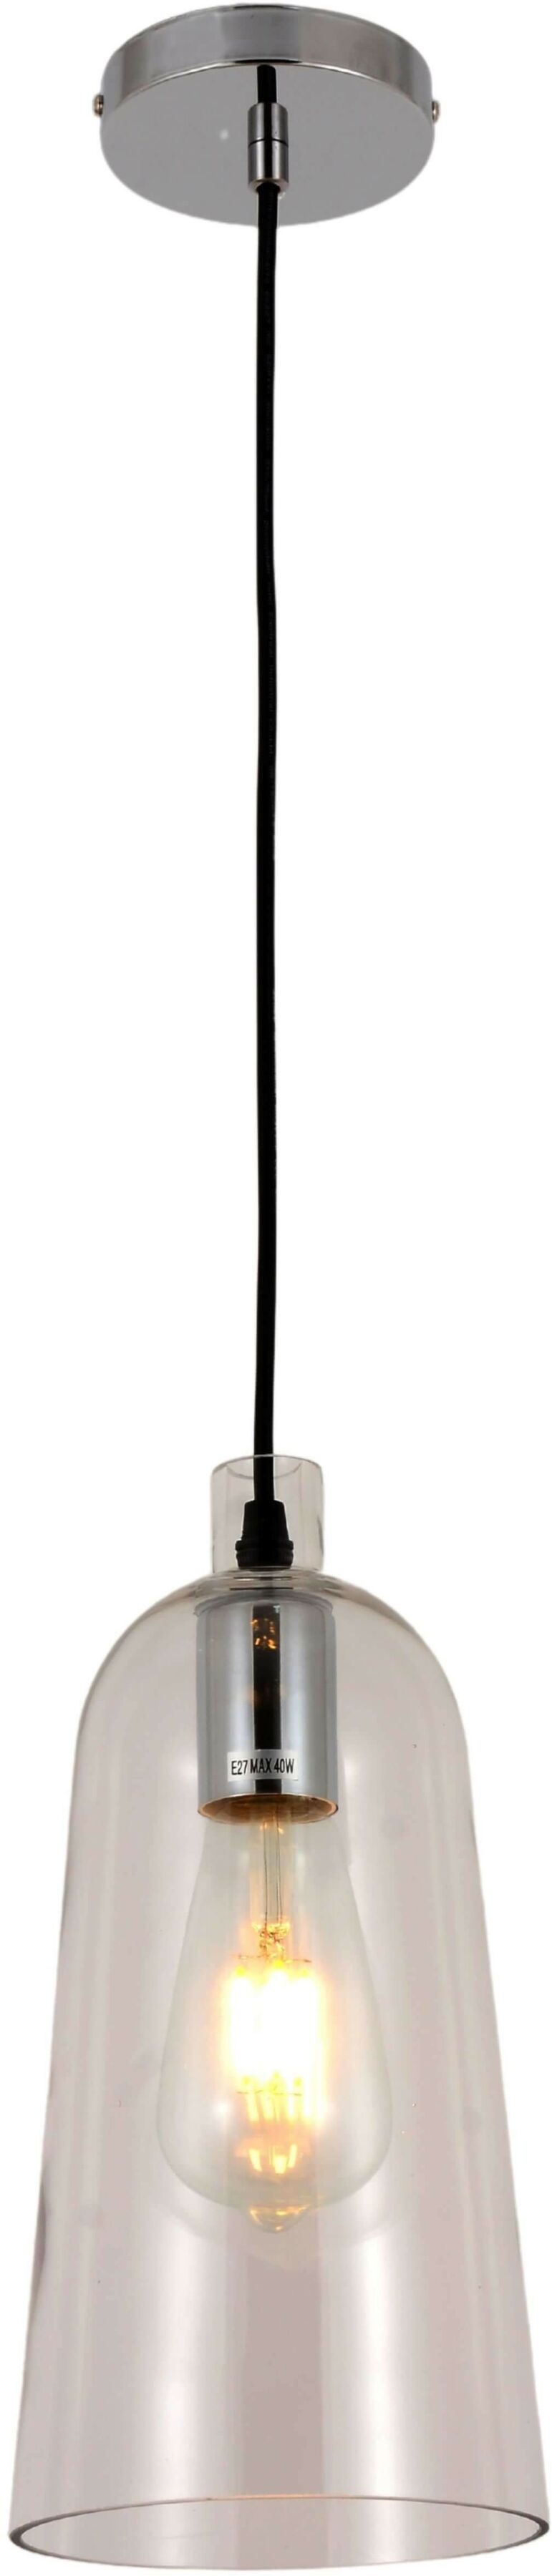 Nordica lampa wisząca transparentna LDP 6814-1 (PR) Lumina Deco // Rabaty w koszyku i darmowa dostawa od 299zł !